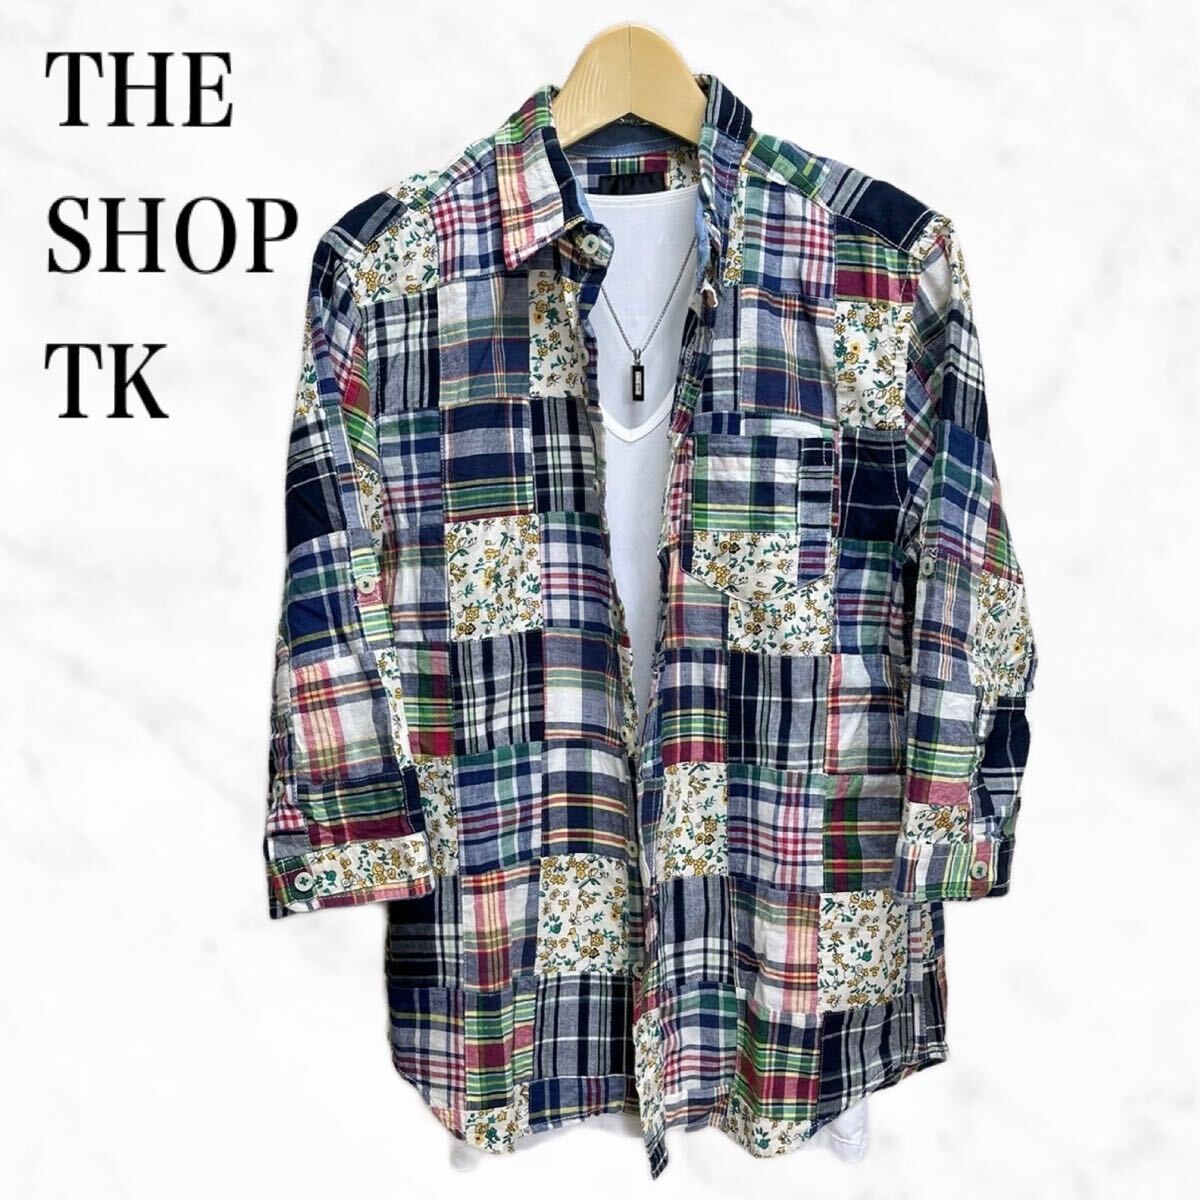 THE SHOP TK チェックシャツ パッチワークシャツ 七分袖シャツの画像1